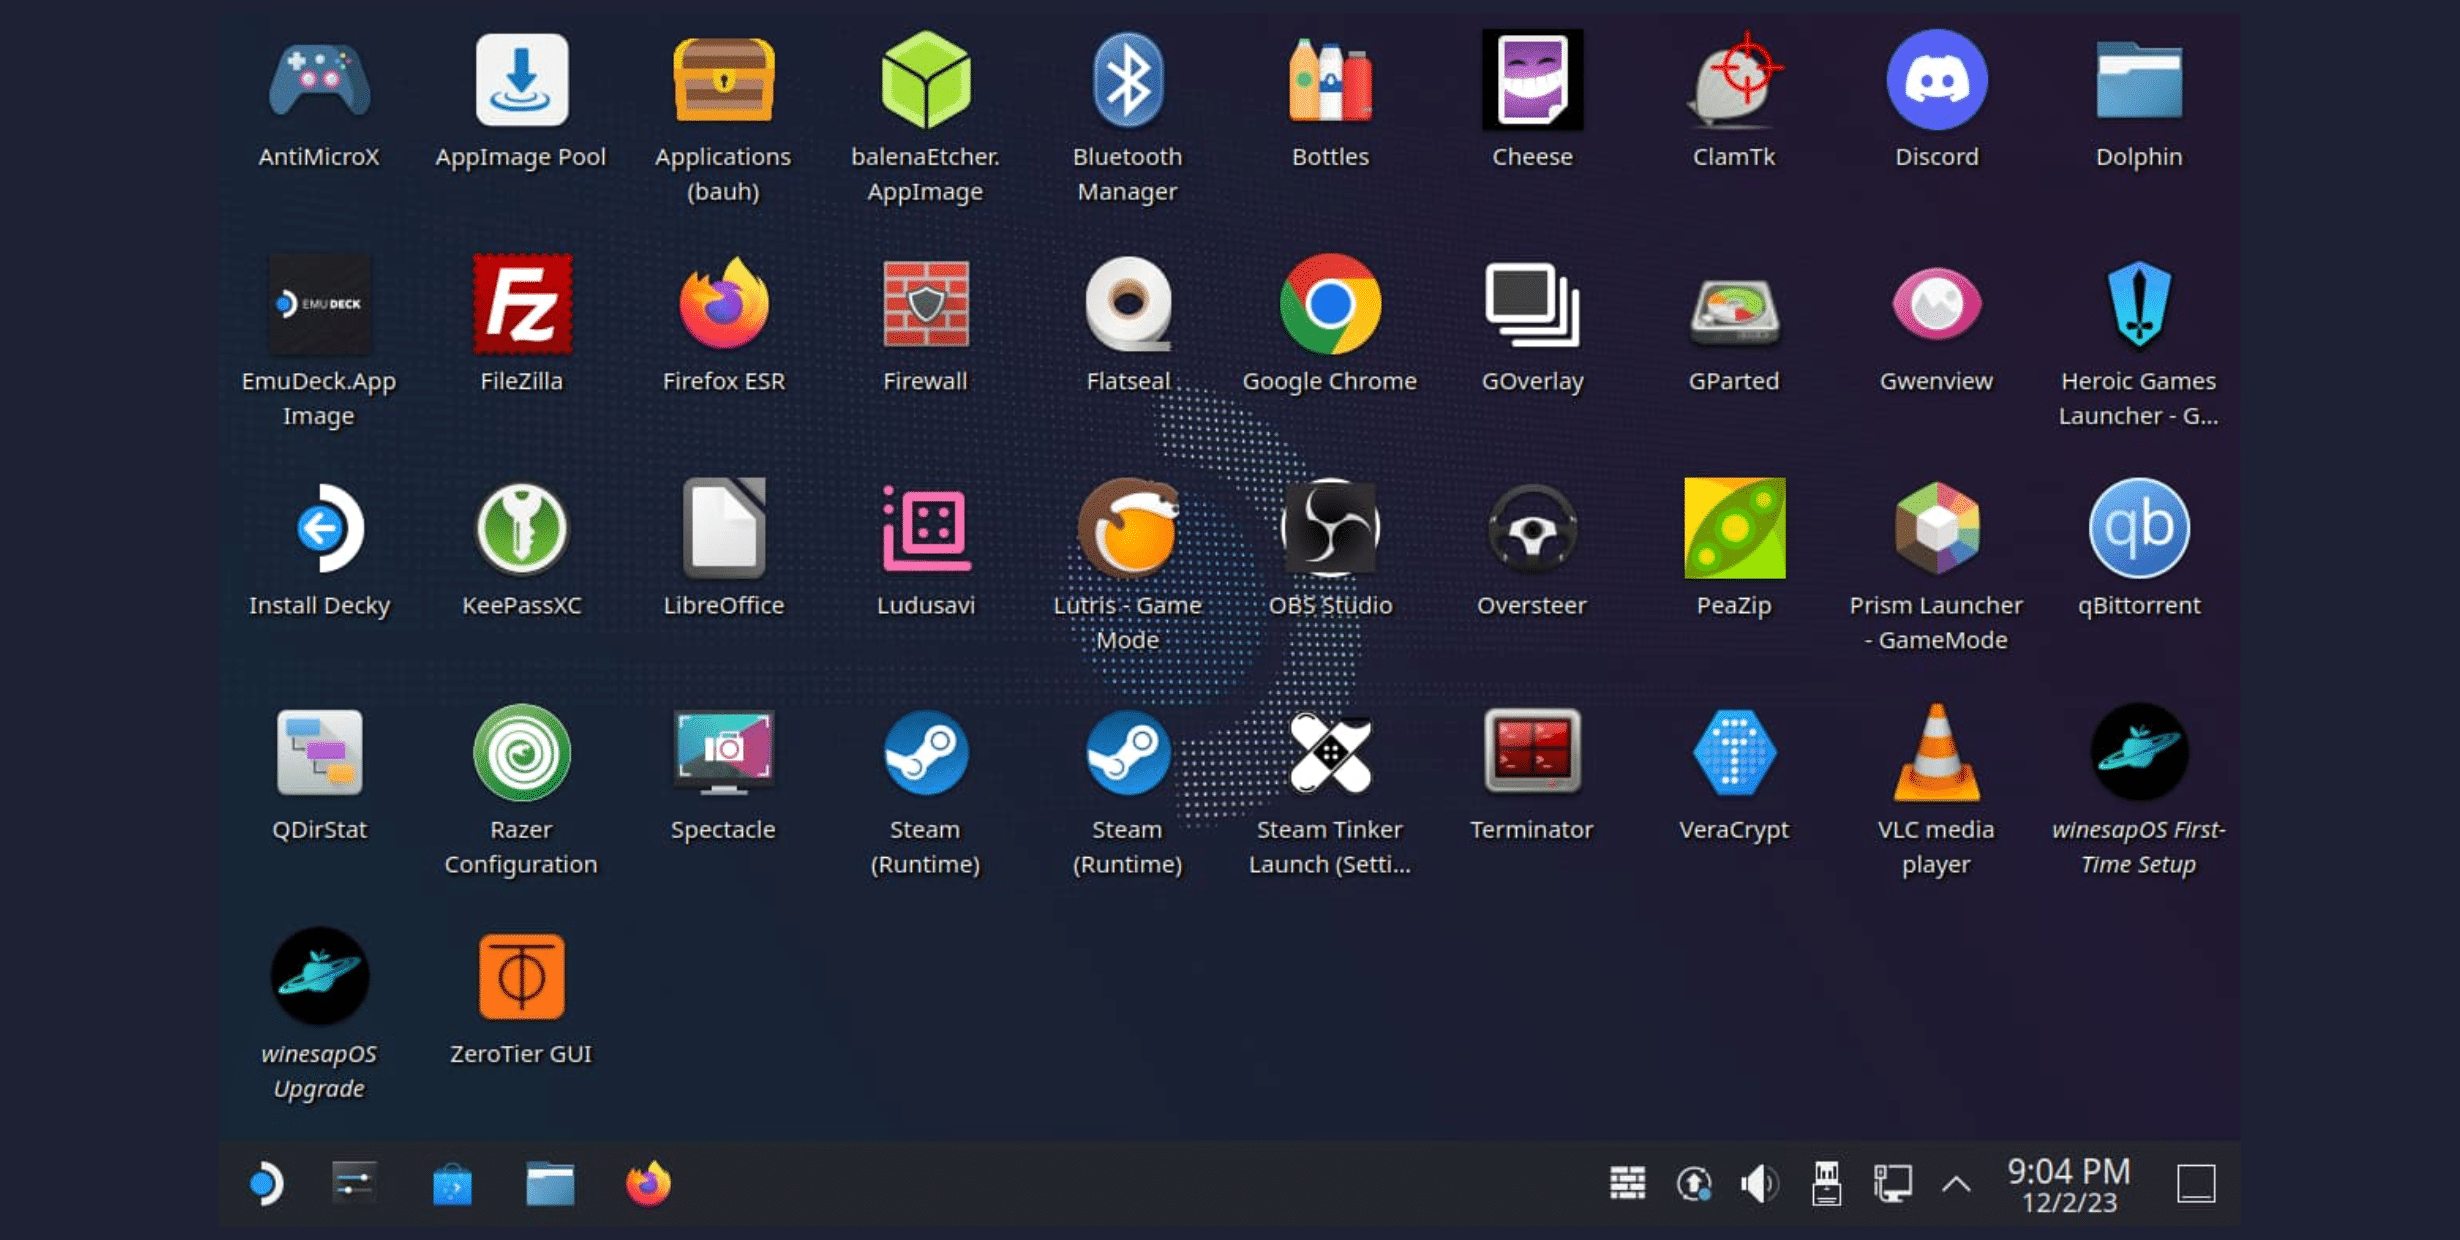 winesapOS é uma distribuição Linux portátil semelhante ao SteamOS